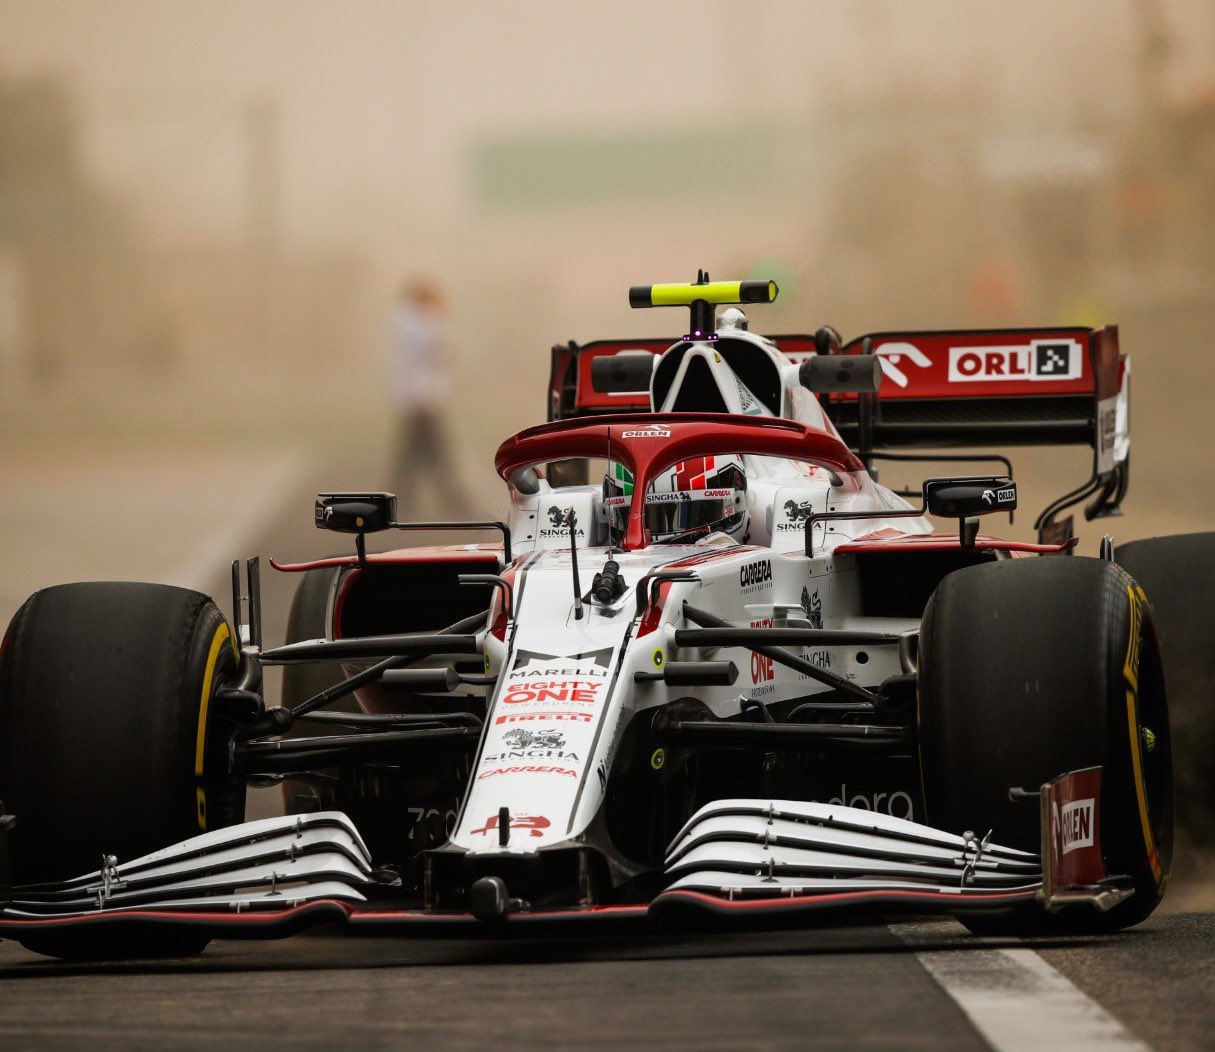 阿尔法罗密欧的2021年F1赛车在季前测试。